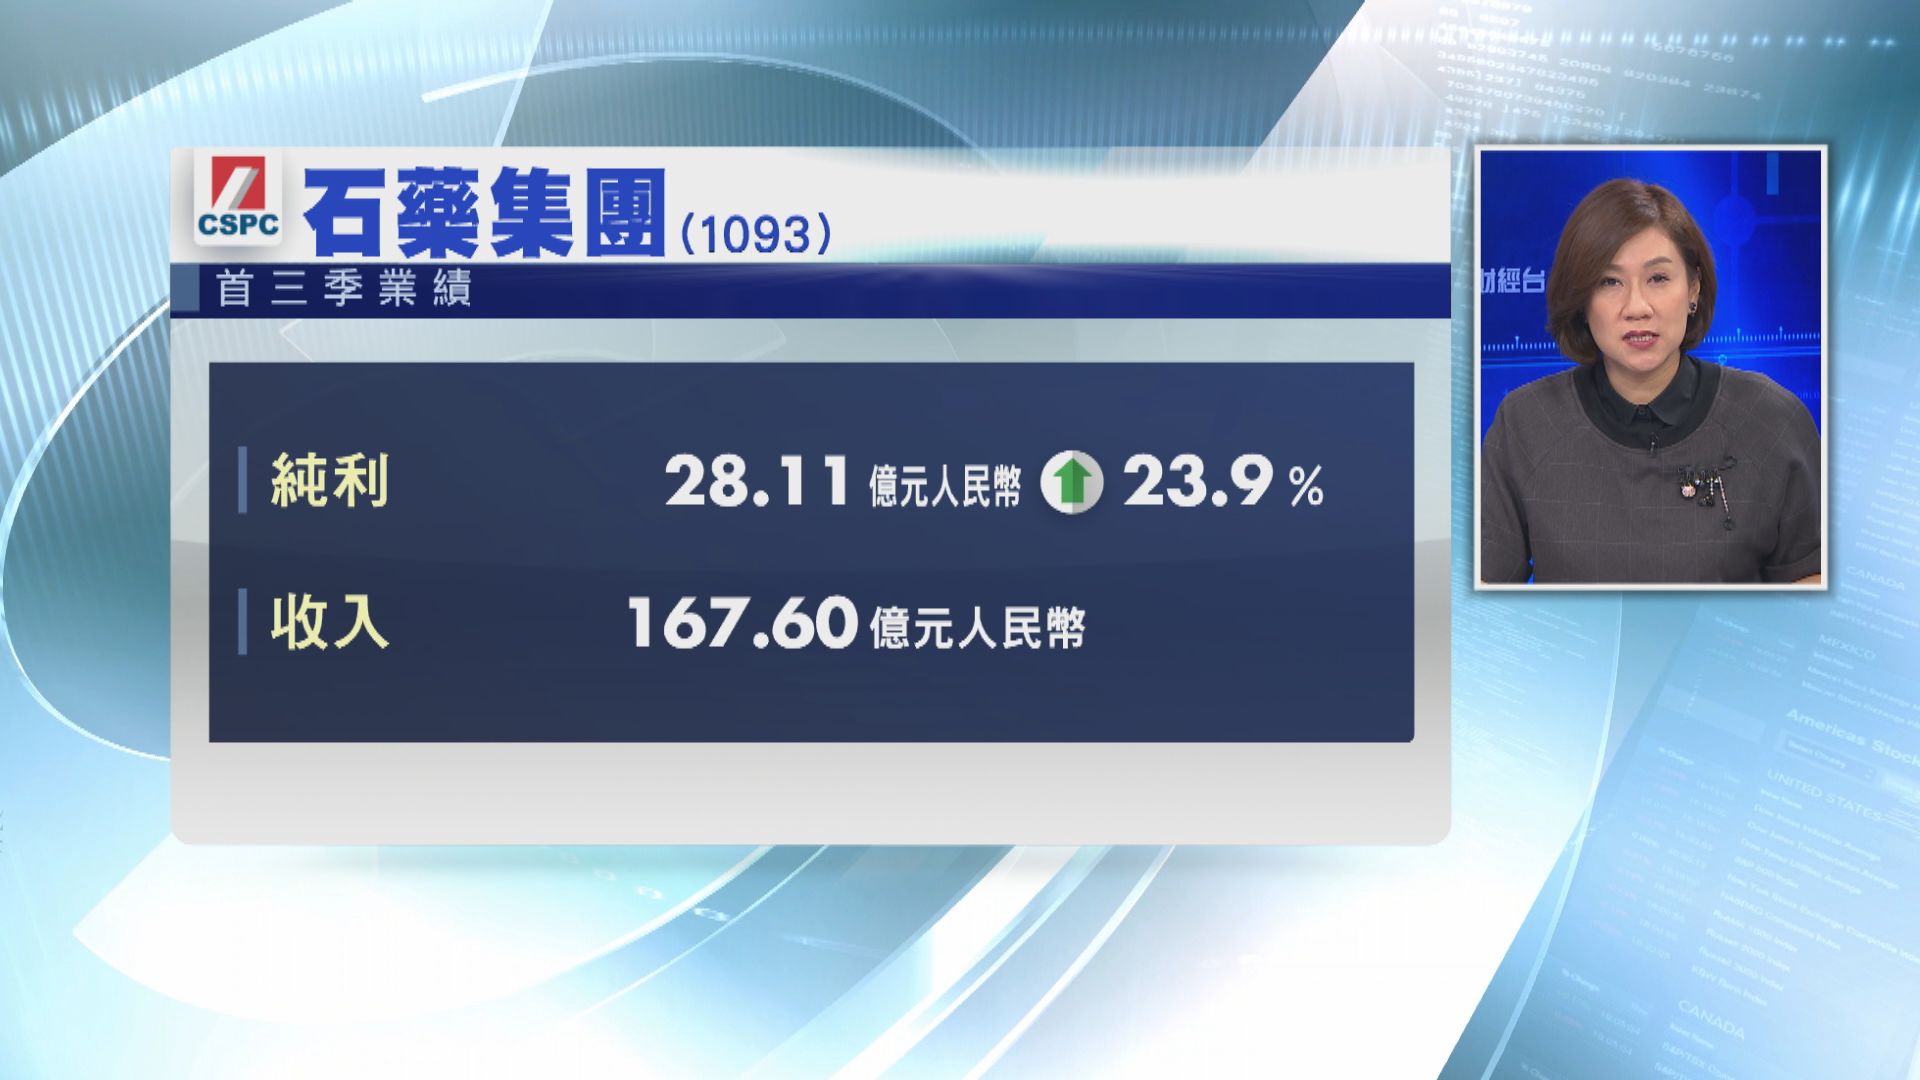 【藍籌業績】石藥首三季多賺24% 收入升27%